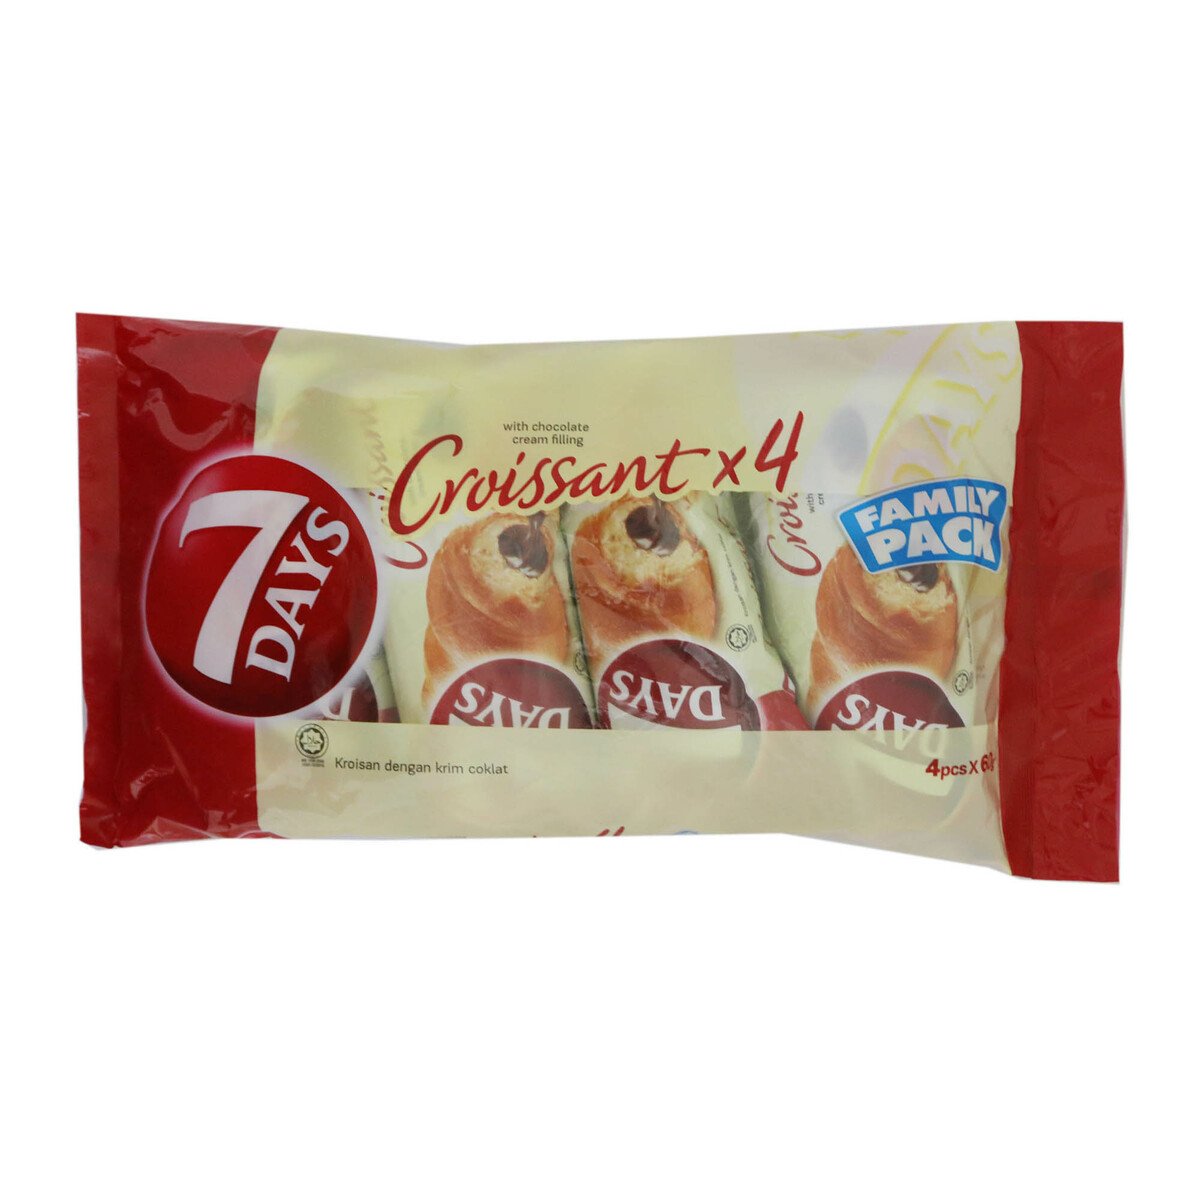 7Days Choco Croissant 4pcs 60g